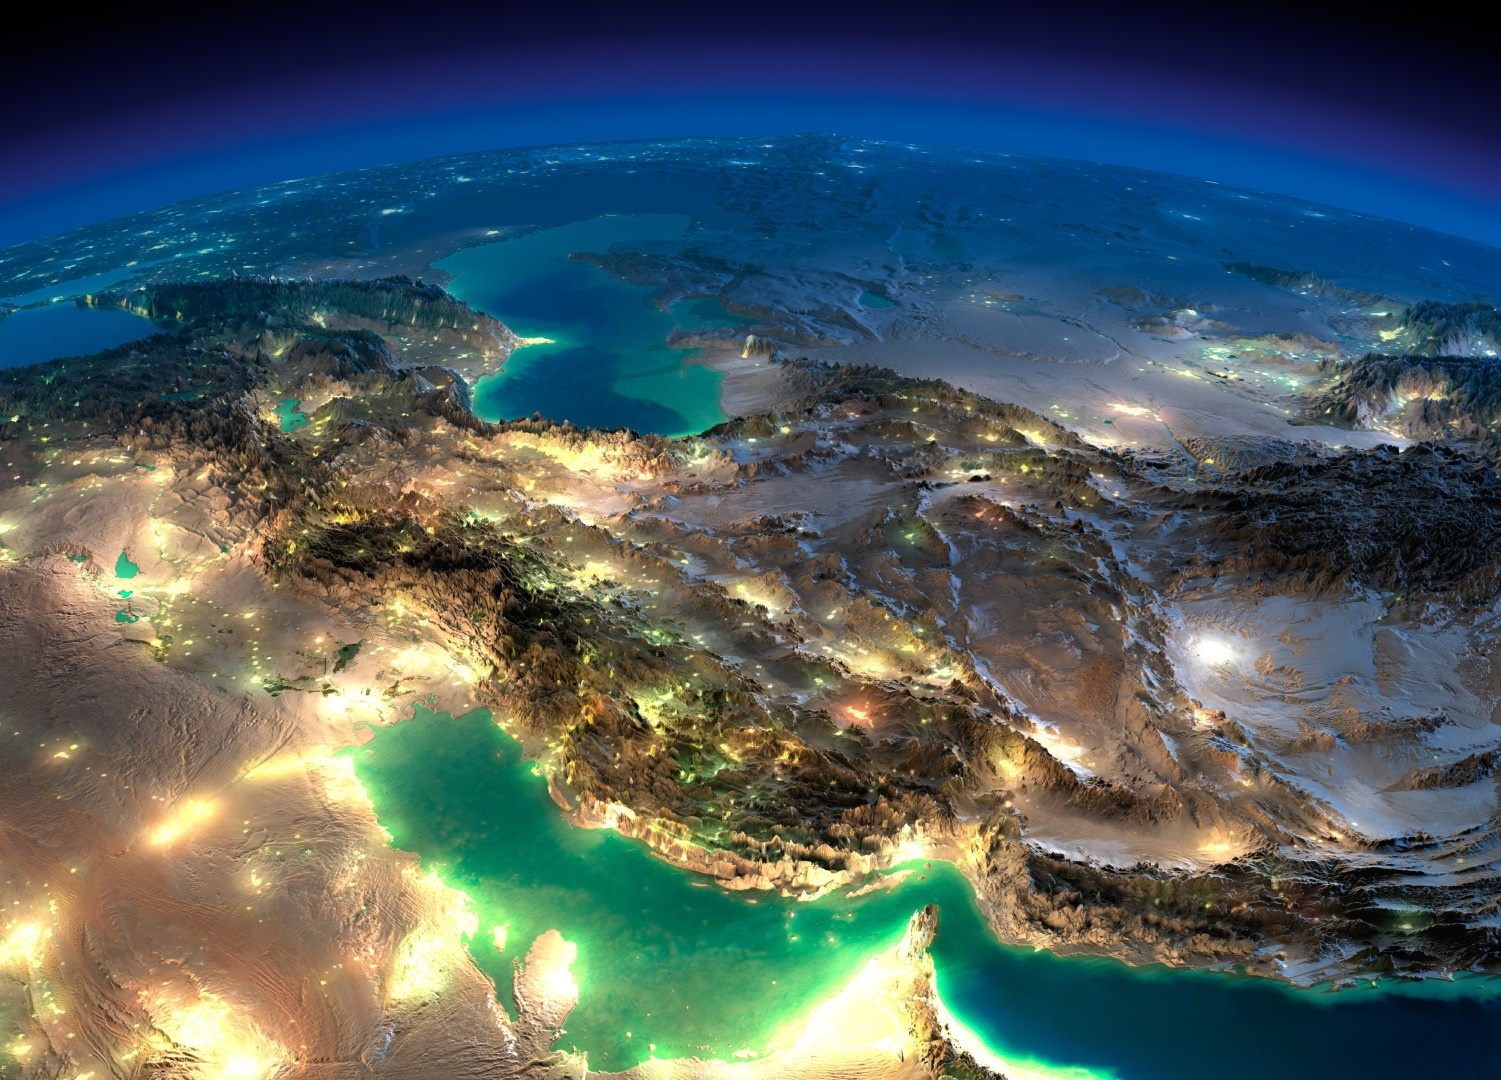 عکس هوایی از ایران